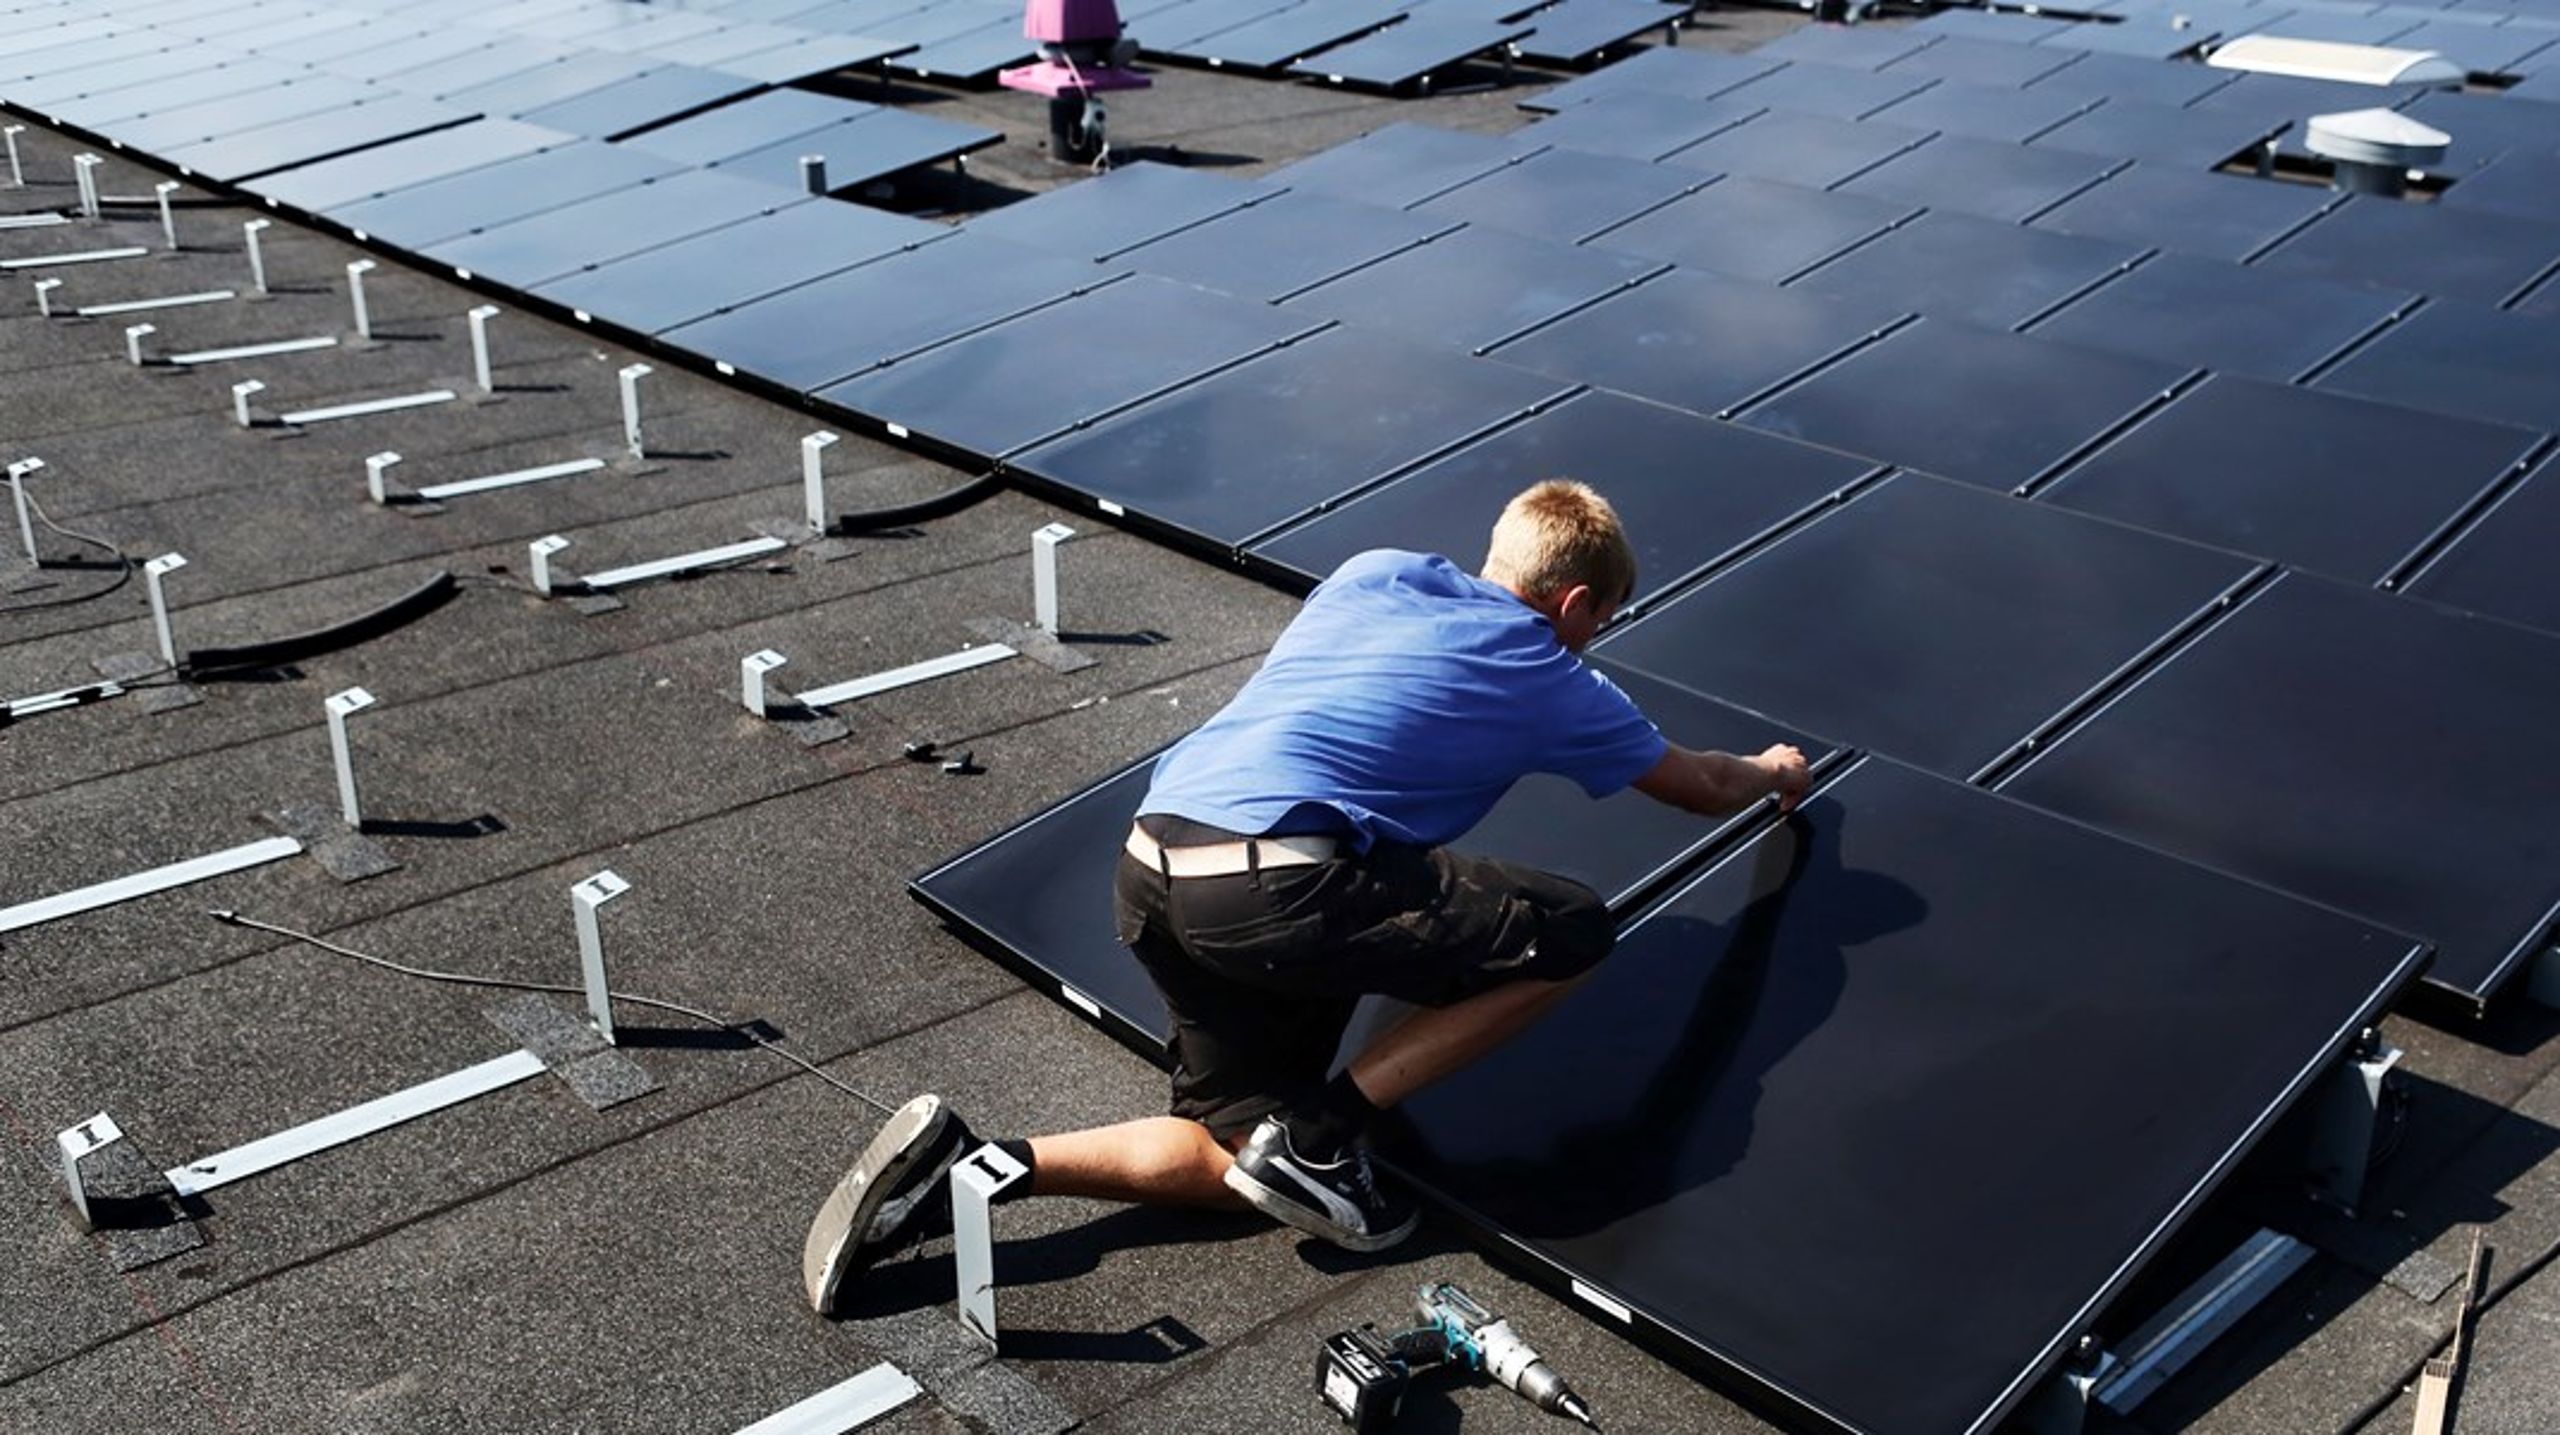 Inden 2025 bør der opstilles mindst 20 GW solcelleanlæg på eksempelvis lavbundsjorde og industritage. Det er den billigste både at frigøre os fra Putins energi, skriver Bjarke Møller.